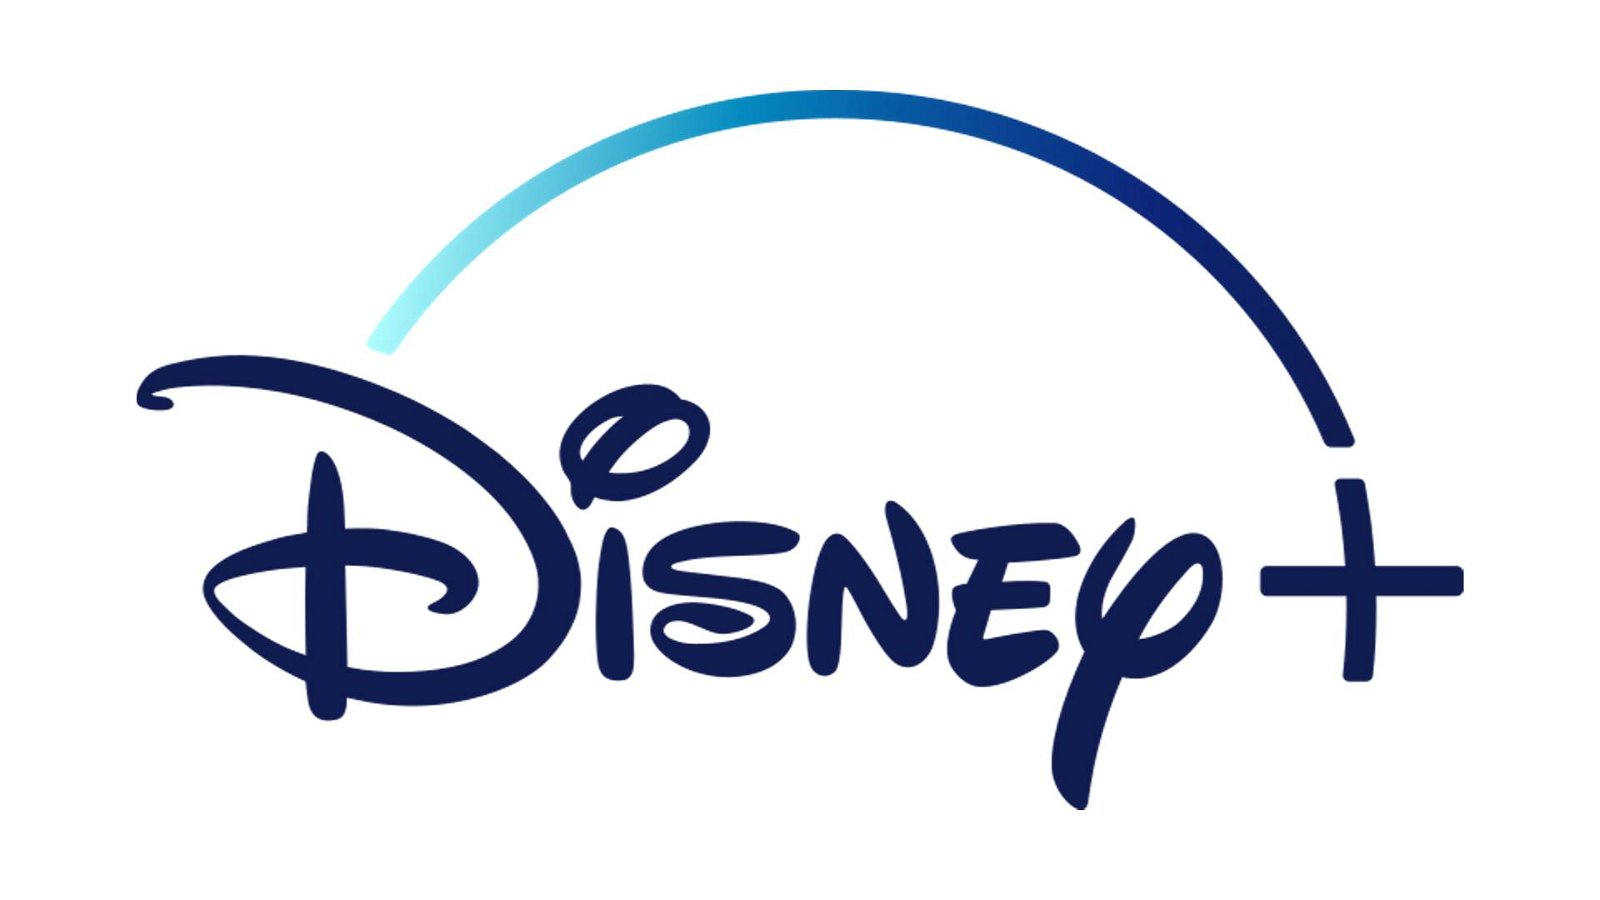 Immagine di Disney+: ecco il catalogo (parziale) dei contenuti disponibili